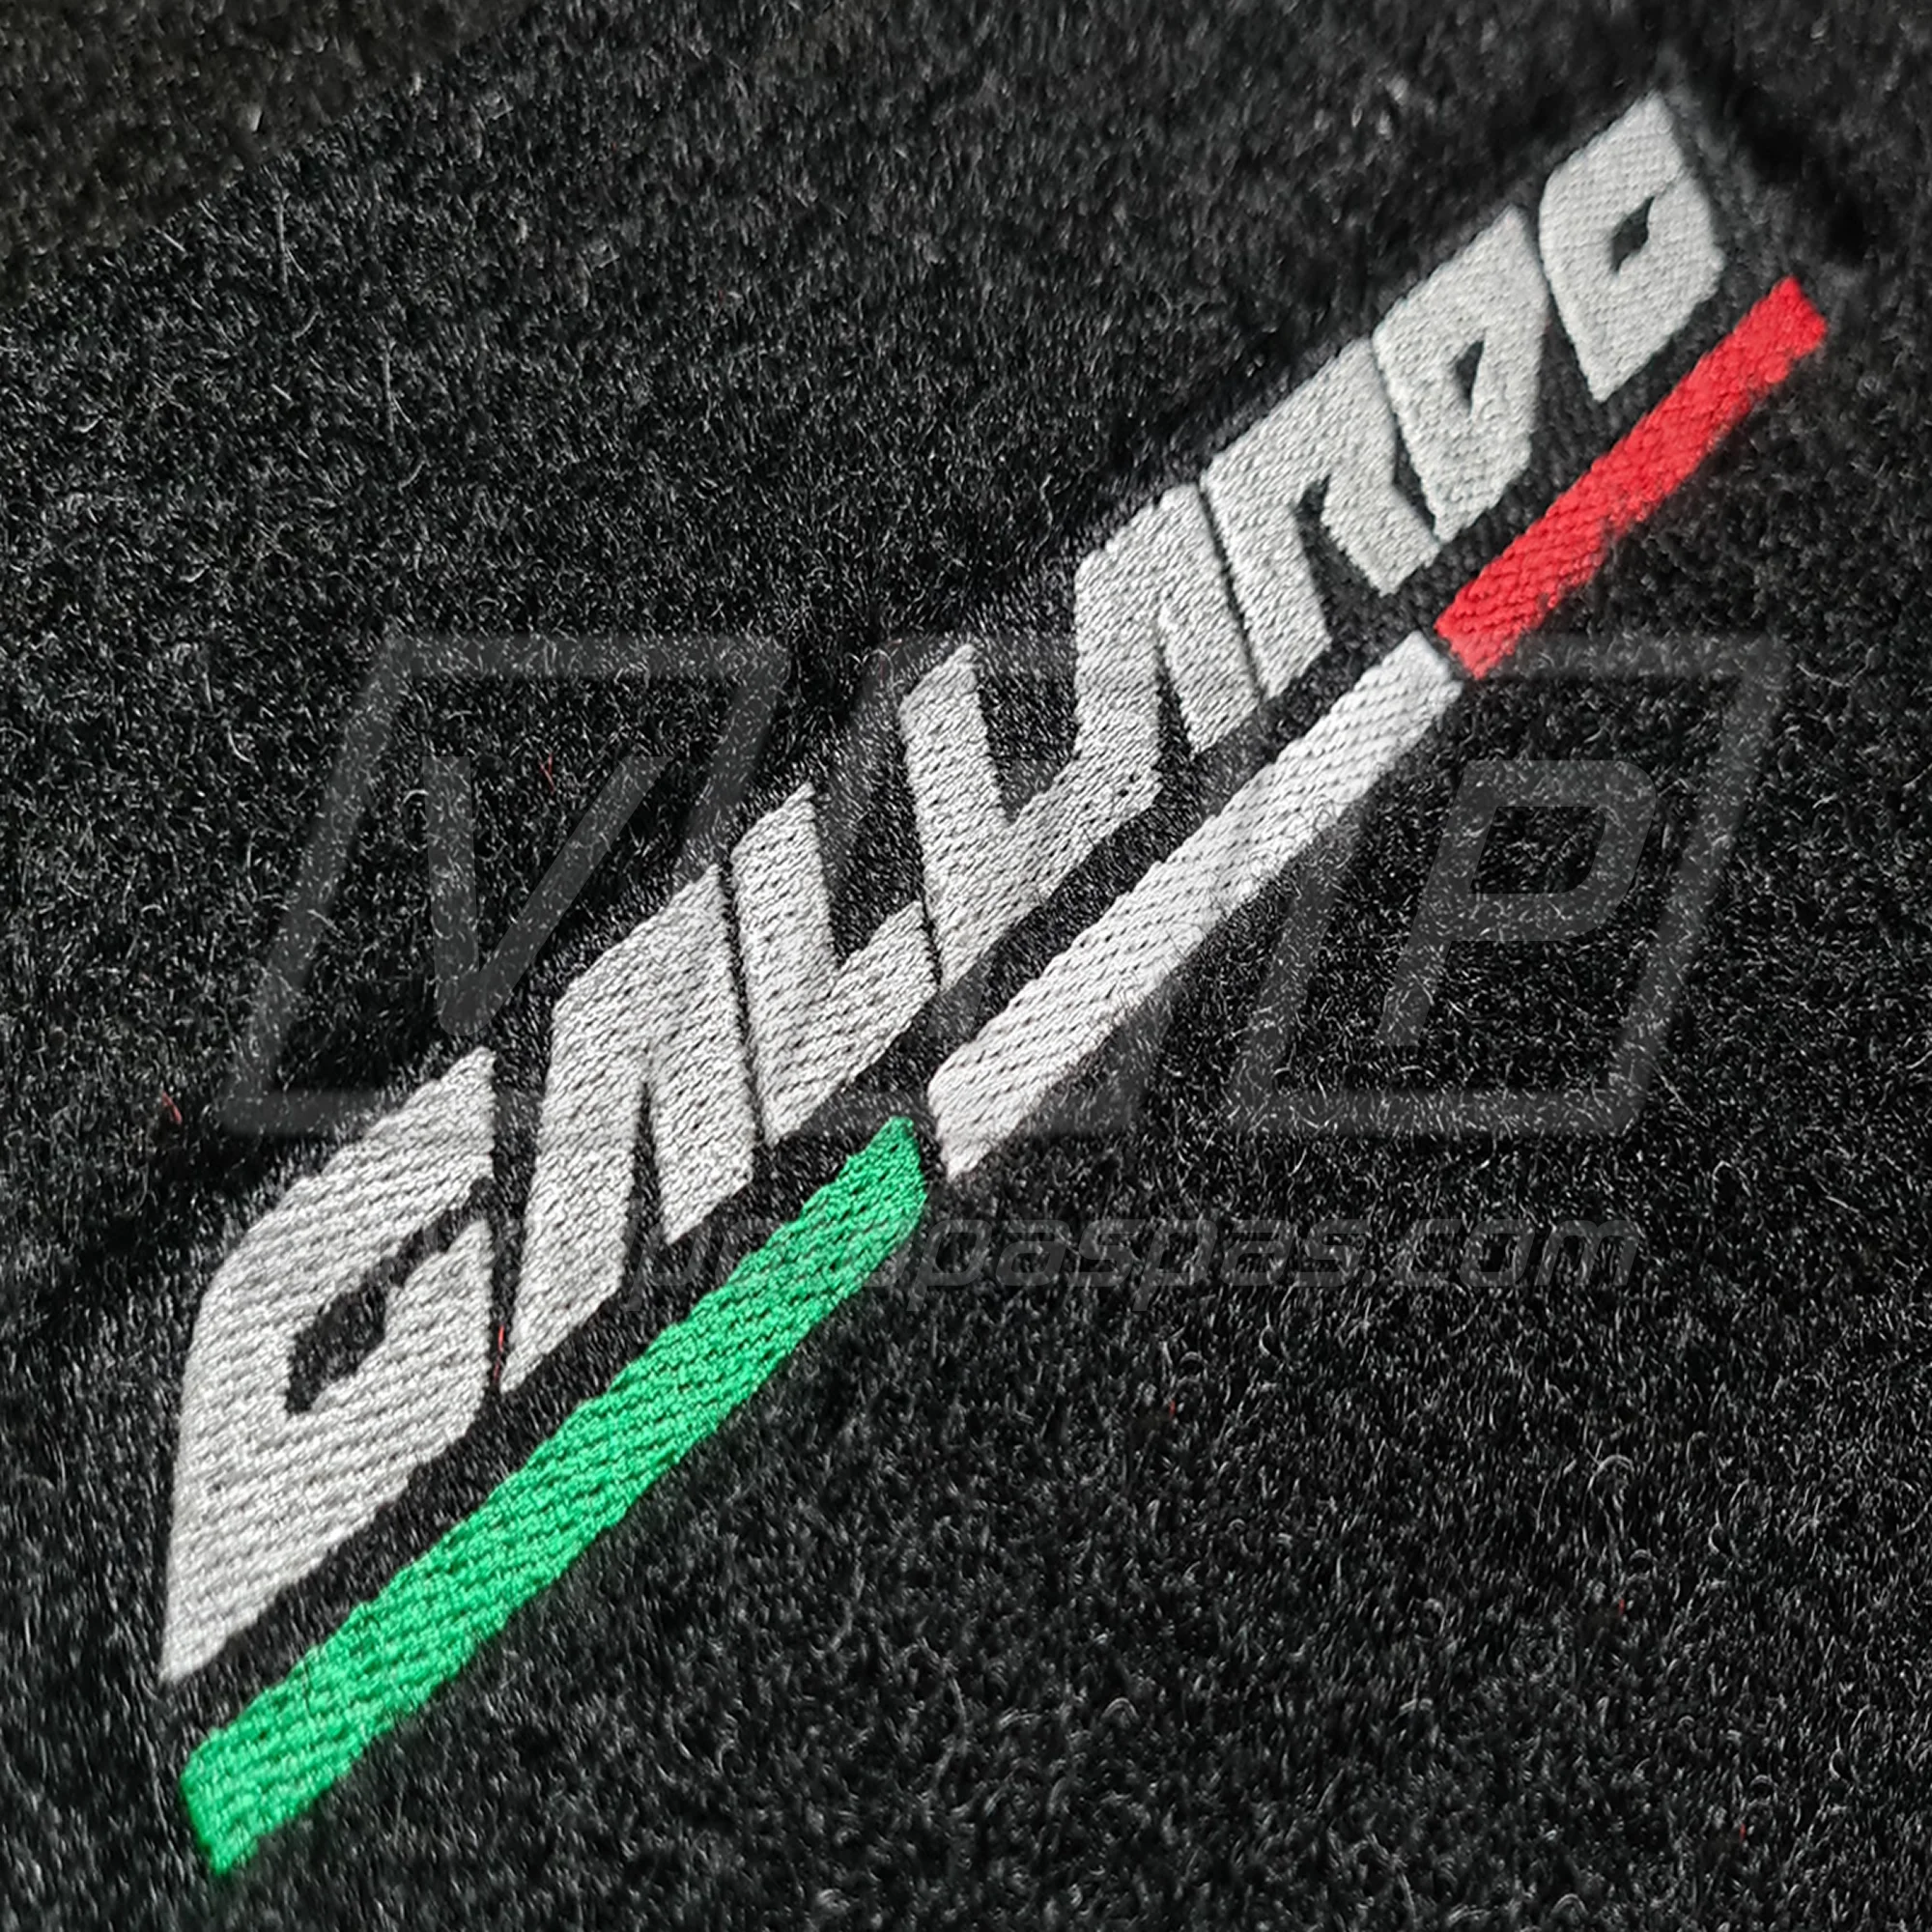 Lamborghini Gallardo Halı Paspas Takımı 2008-2013 #GALLARDO